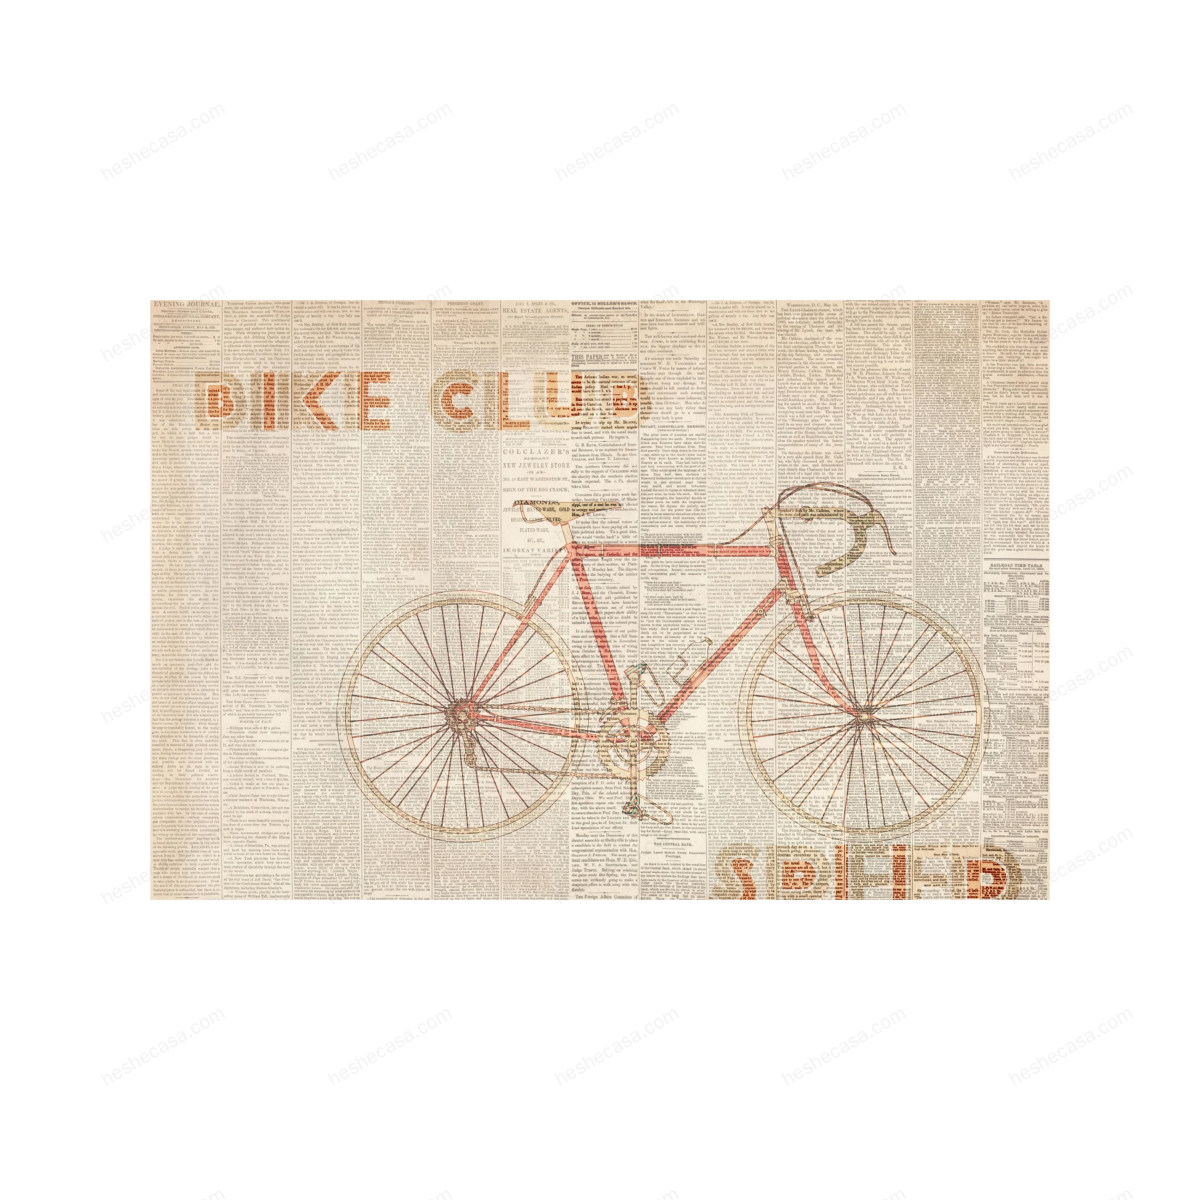 Bike Club壁纸